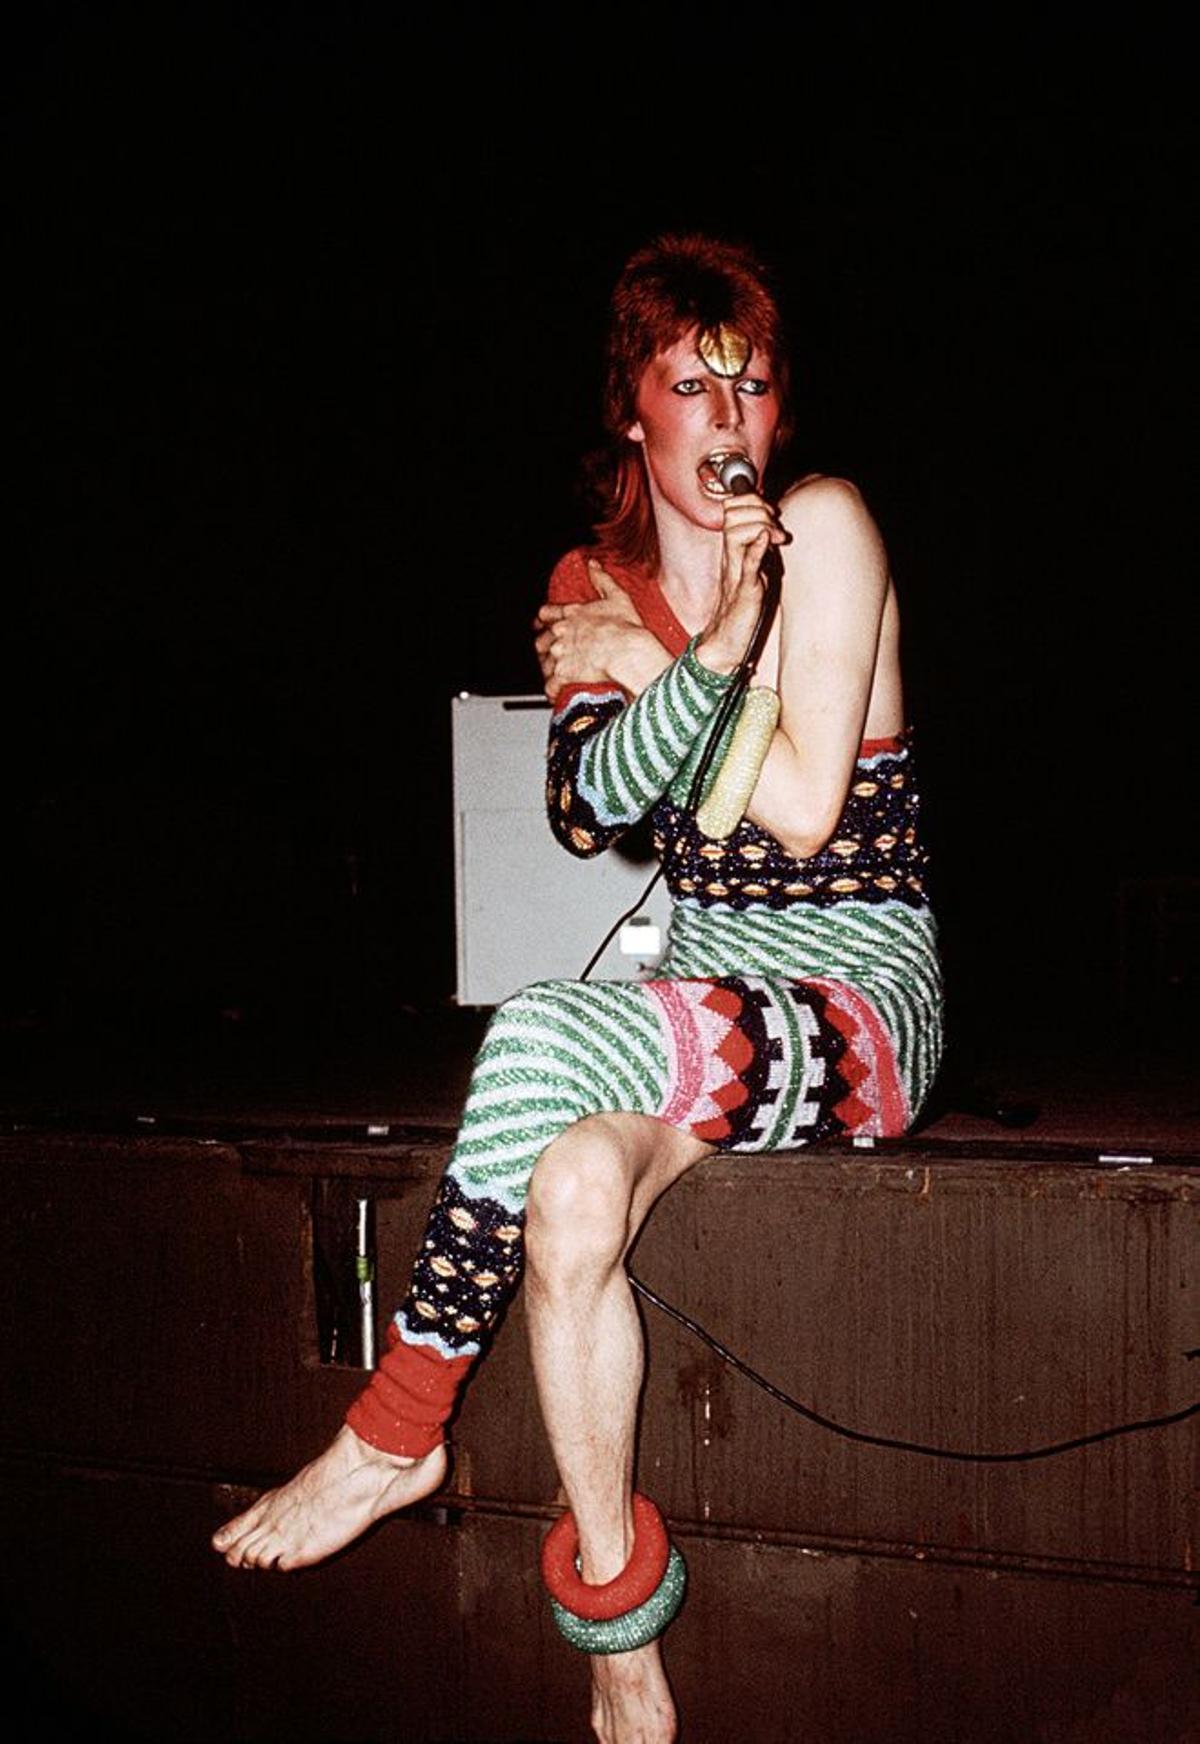 David Bowie, más que un icono pop. Moda.